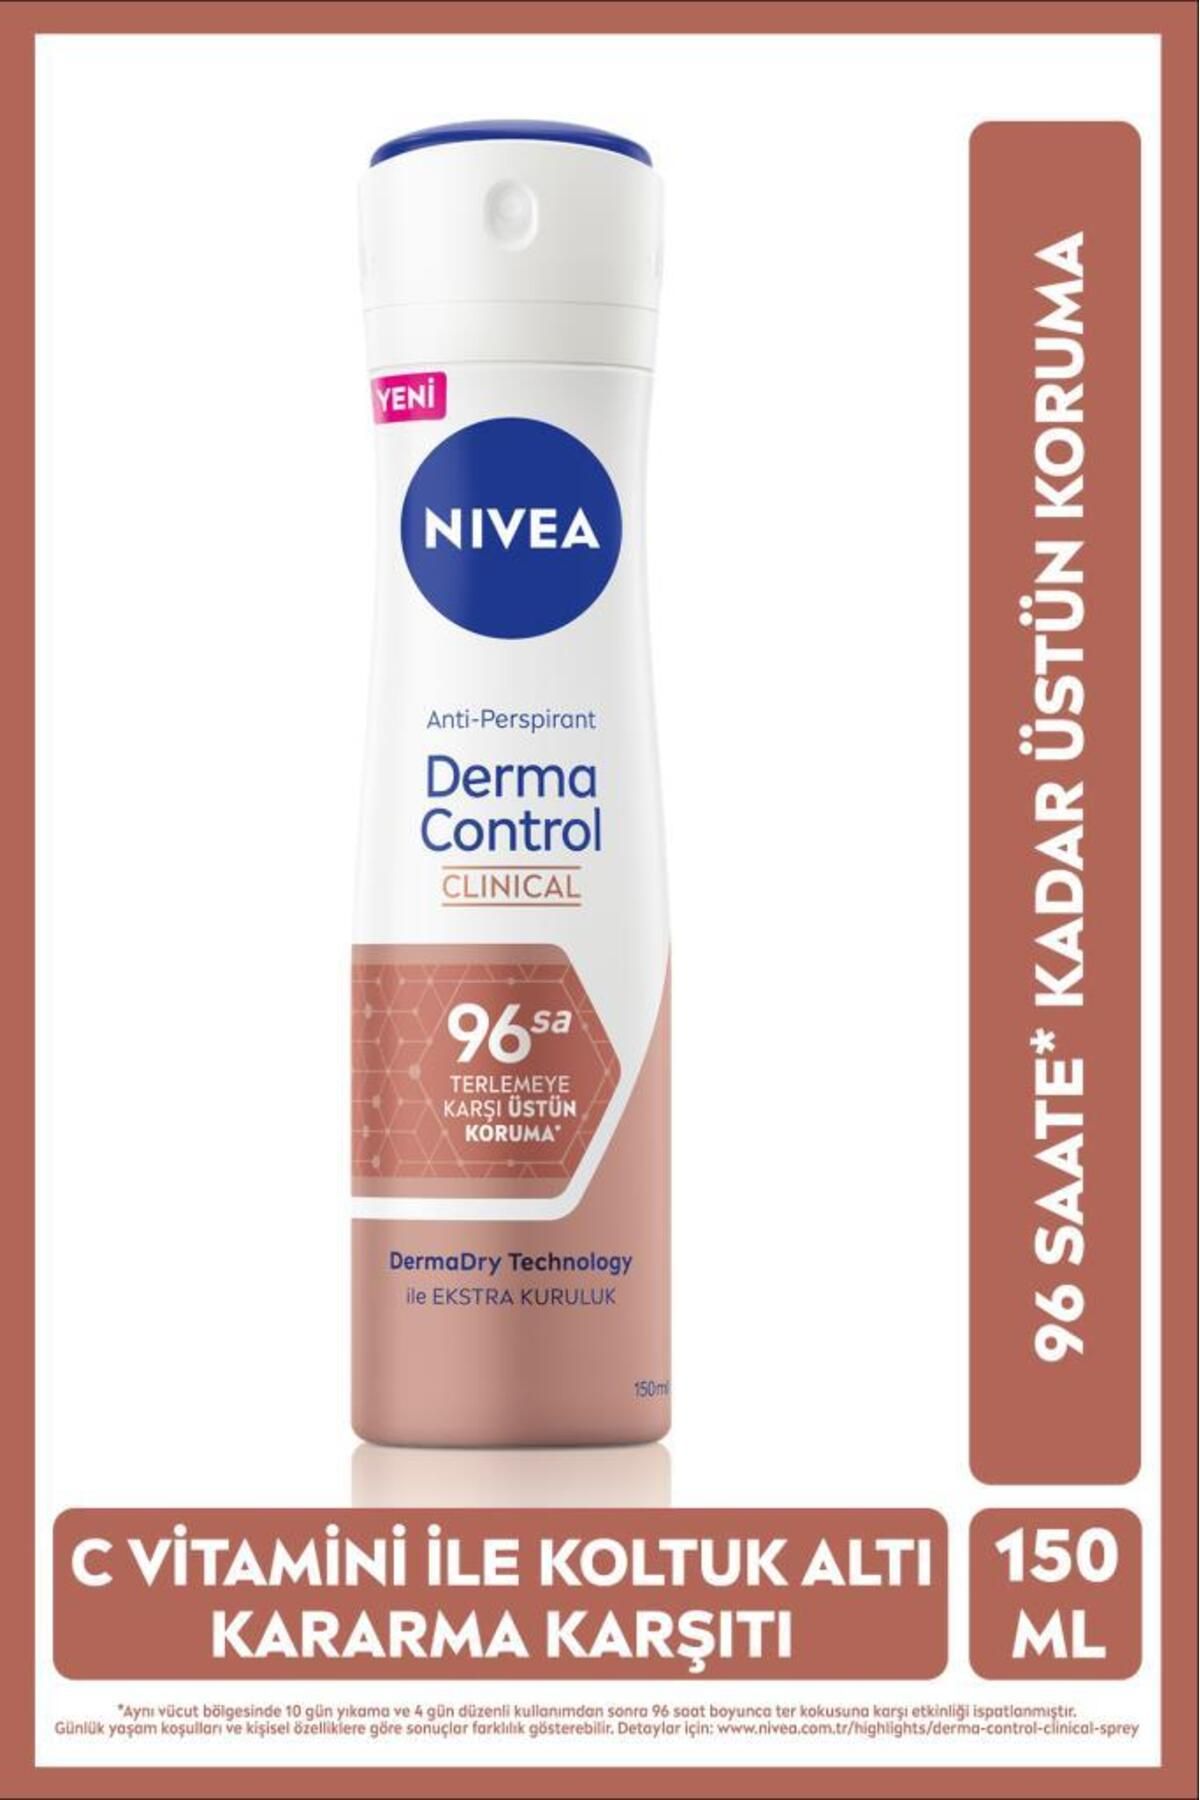 NIVEA Kadın Sprey Deodorant Derma Control Clinical 150ml, C Vitamini Ile Koltuk Altı Kararma Karşıtı